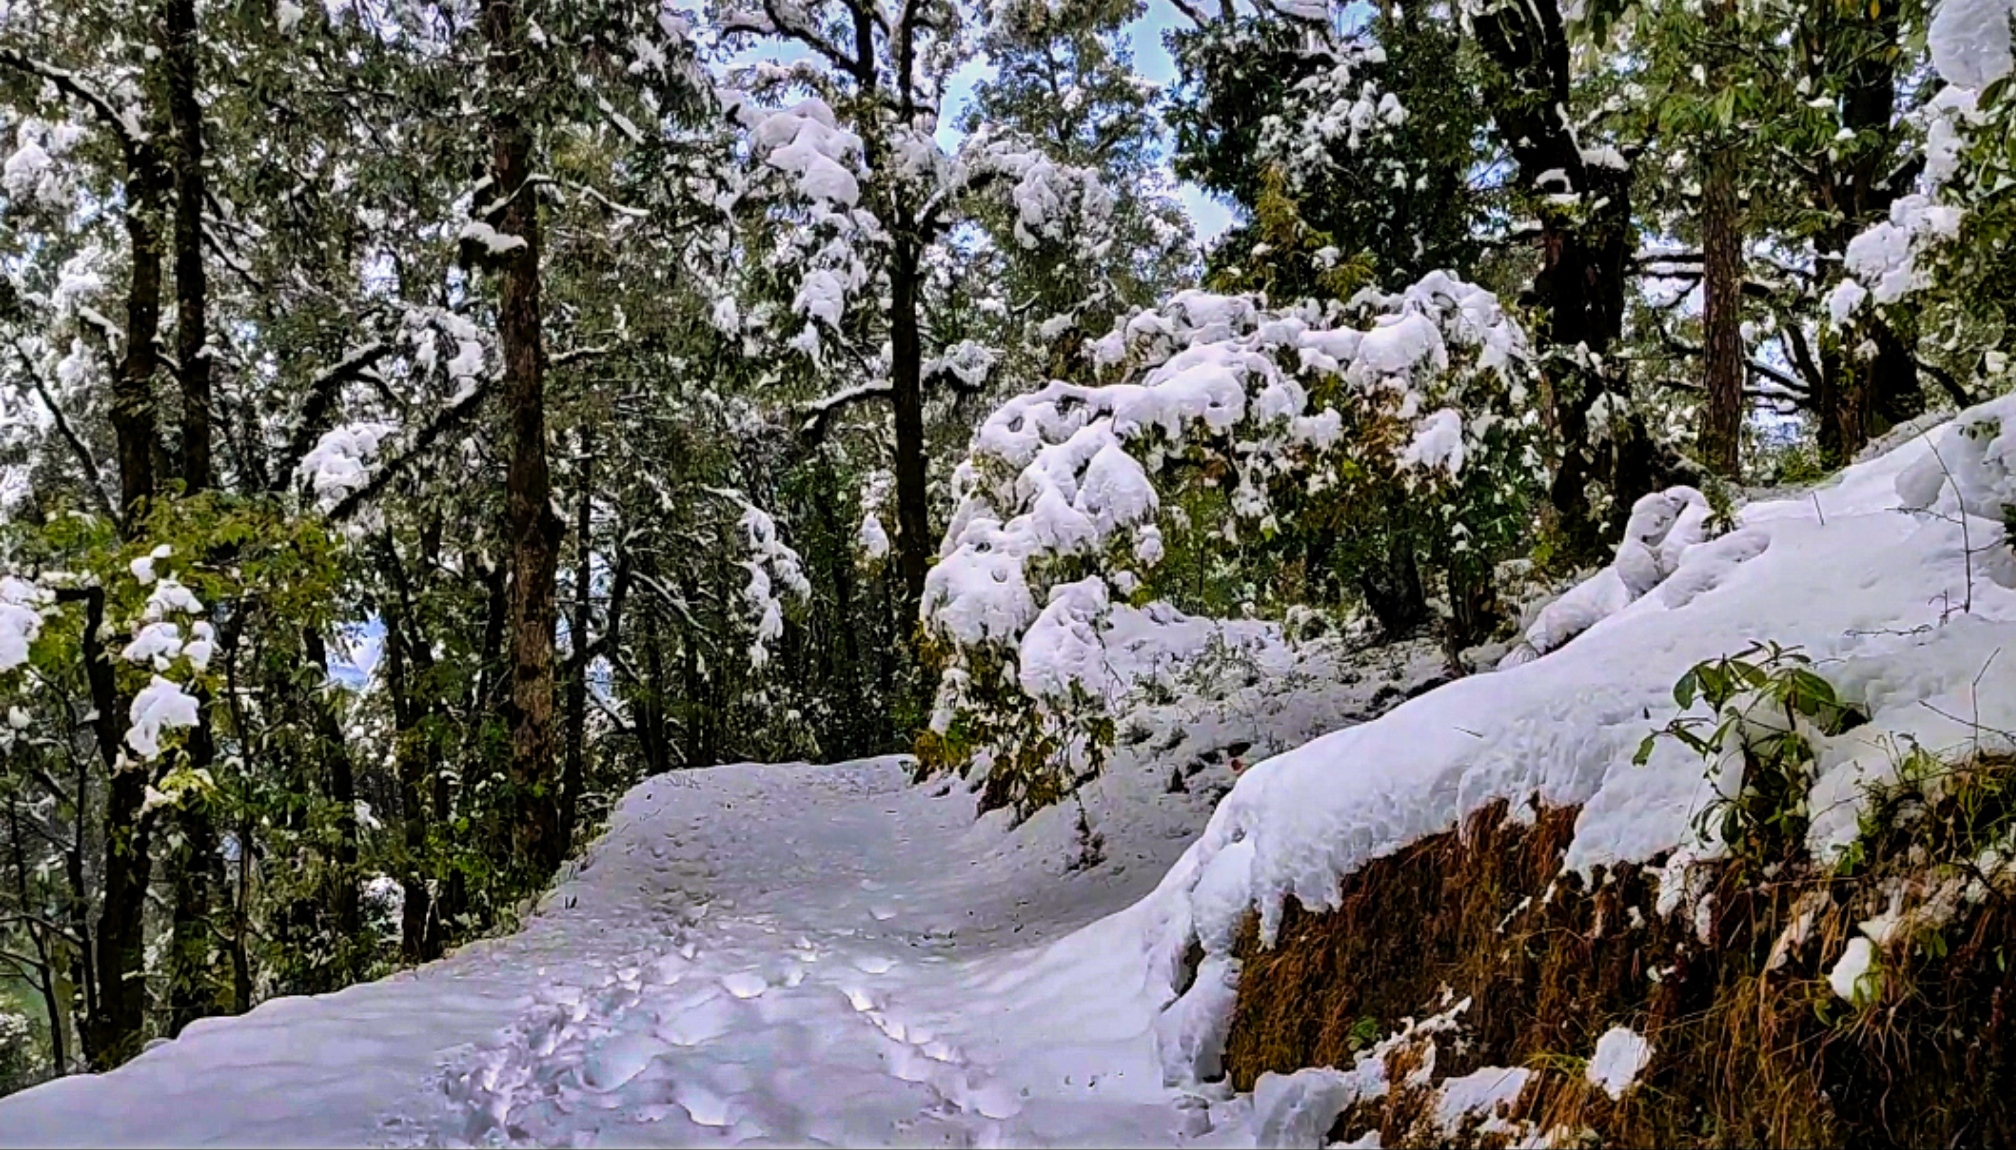 Snowfall on trees